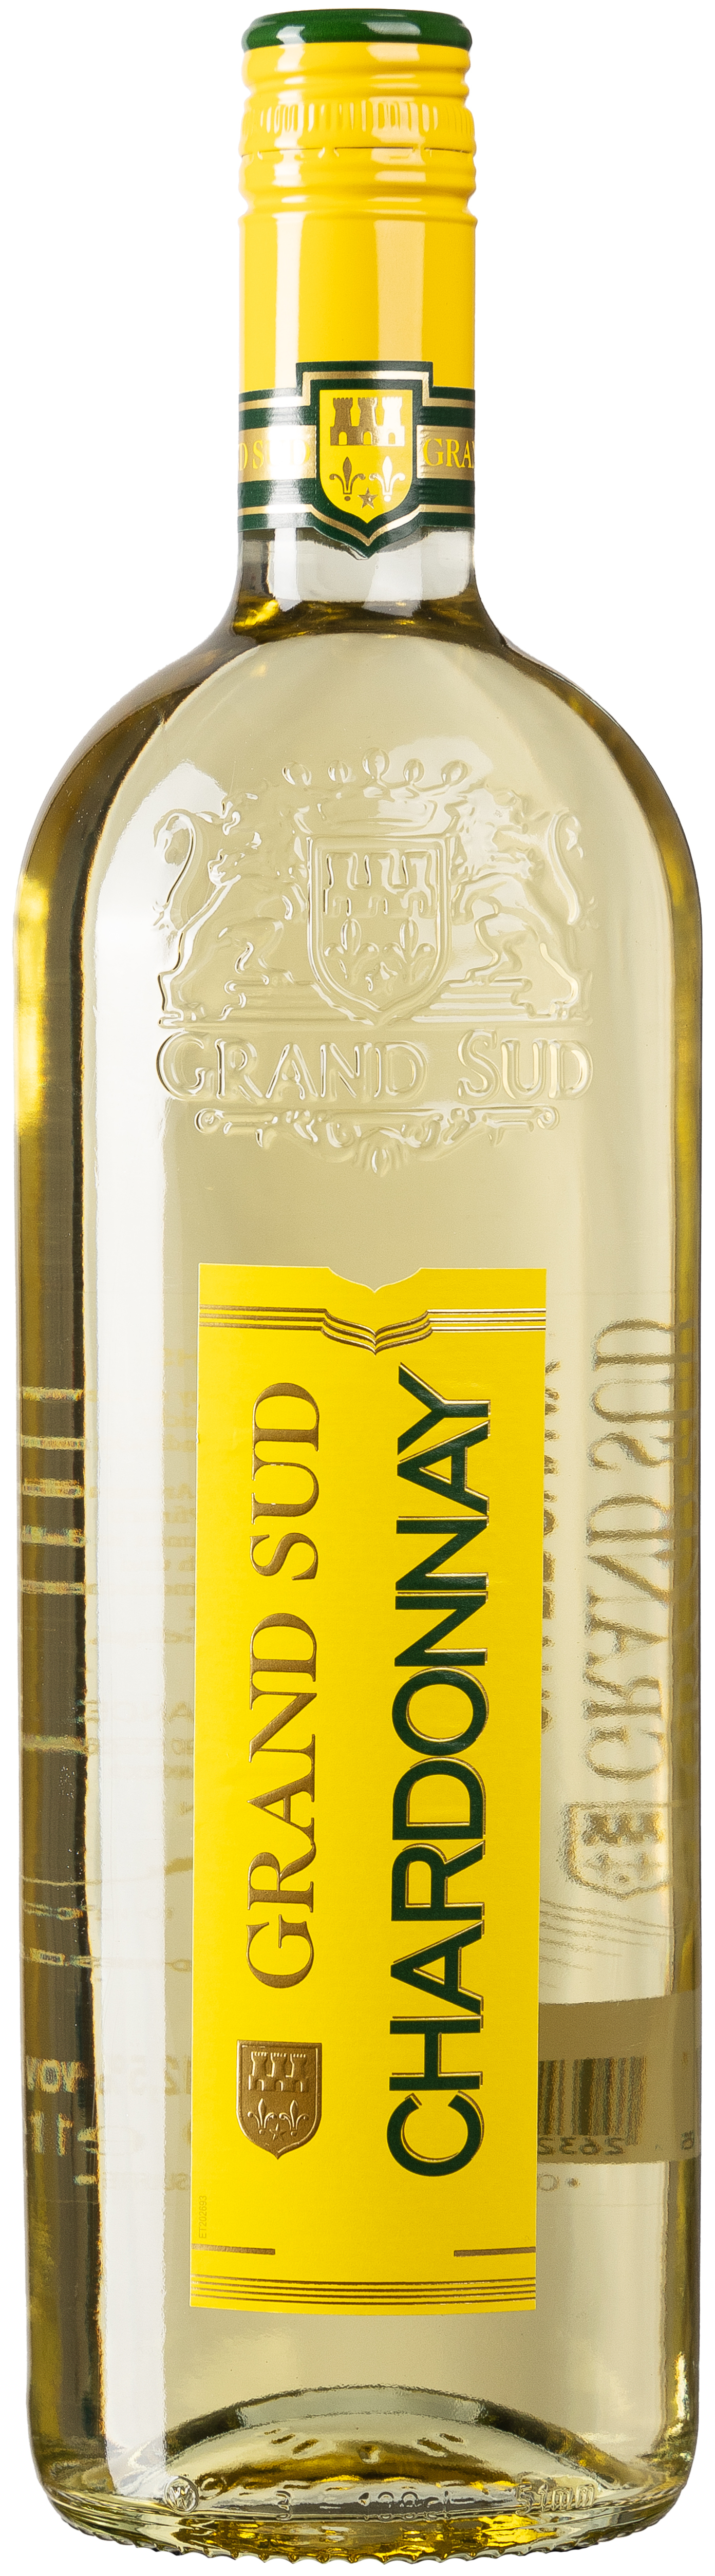 Grand Sud Chardonnay 12,5% vol. 1L 